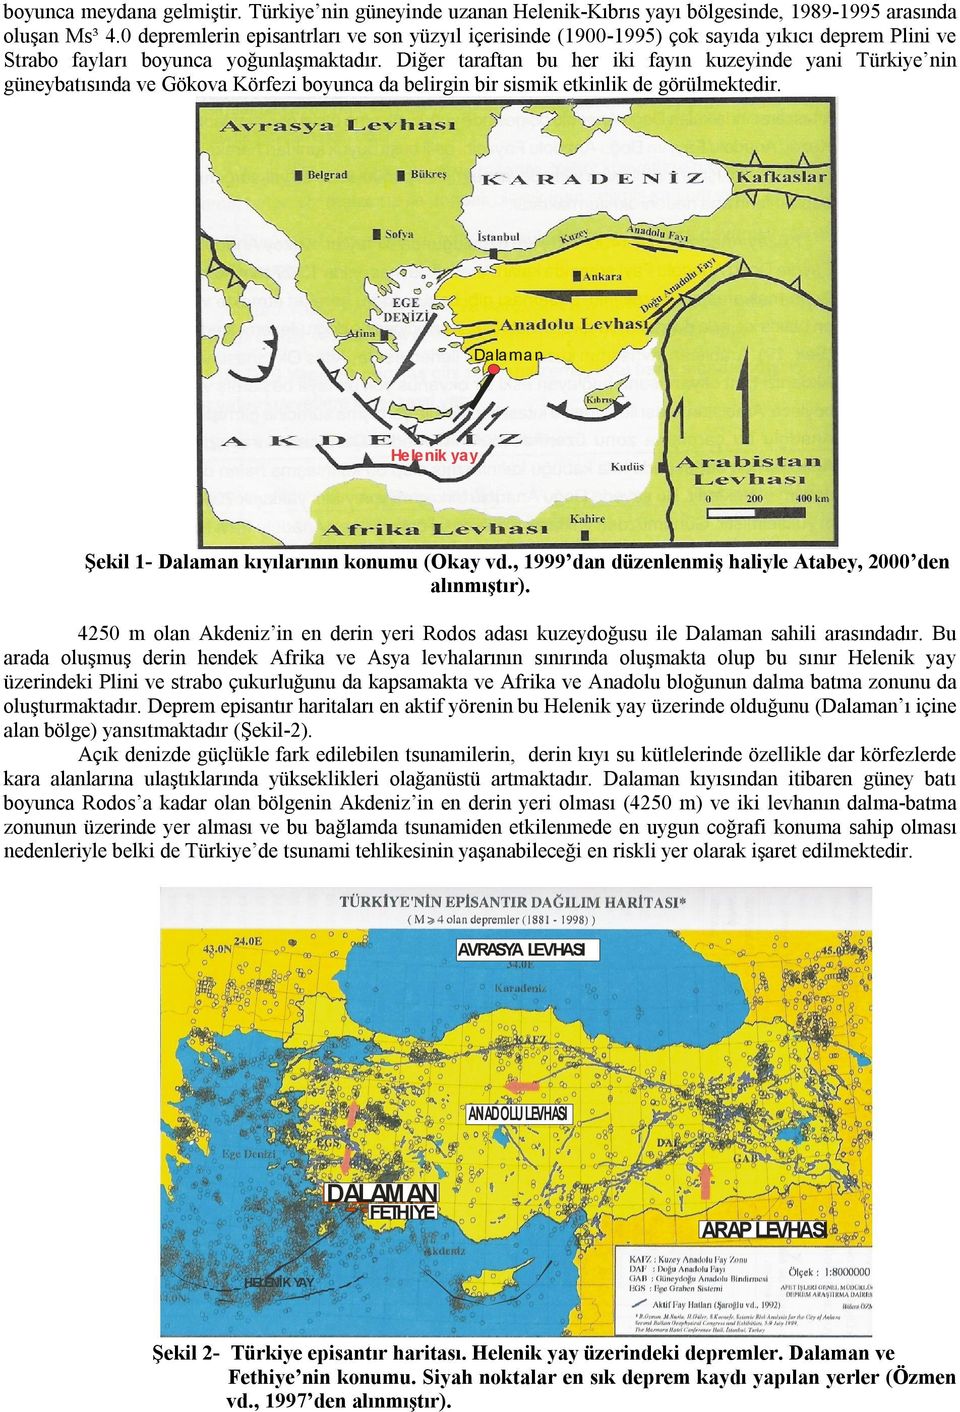 Diğer taraftan bu her iki fayın kuzeyinde yani Türkiye nin güneybatısında ve Gökova Körfezi boyunca da belirgin bir sismik etkinlik de görülmektedir.